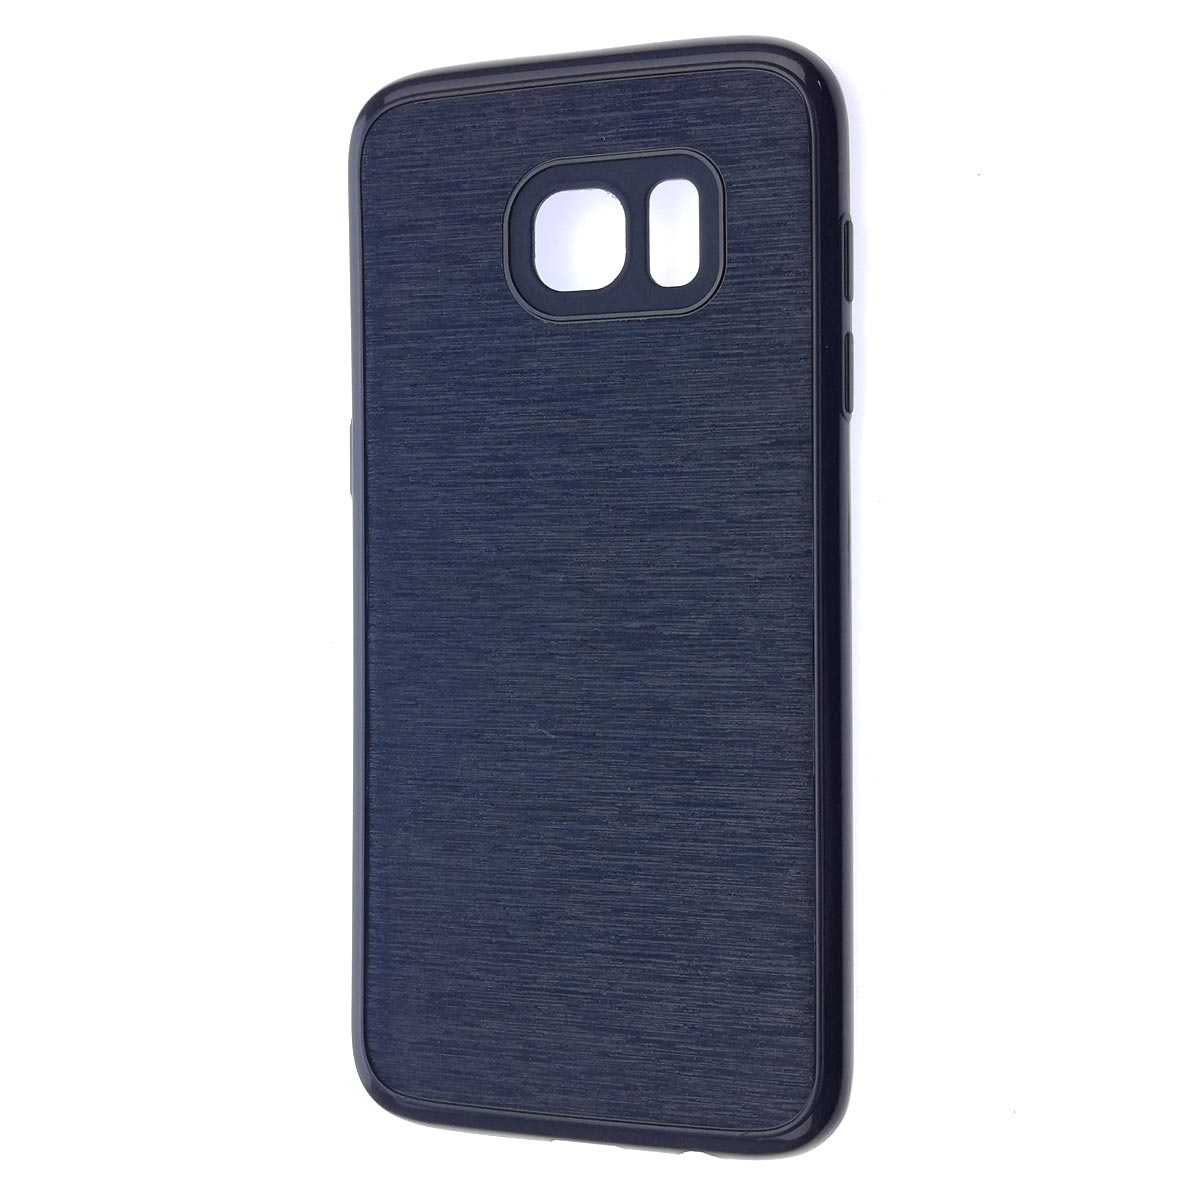 Чехол накладка для SAMSUNG Galaxy S7 Edge (SM-G935), силикон, текстура, цвет синий